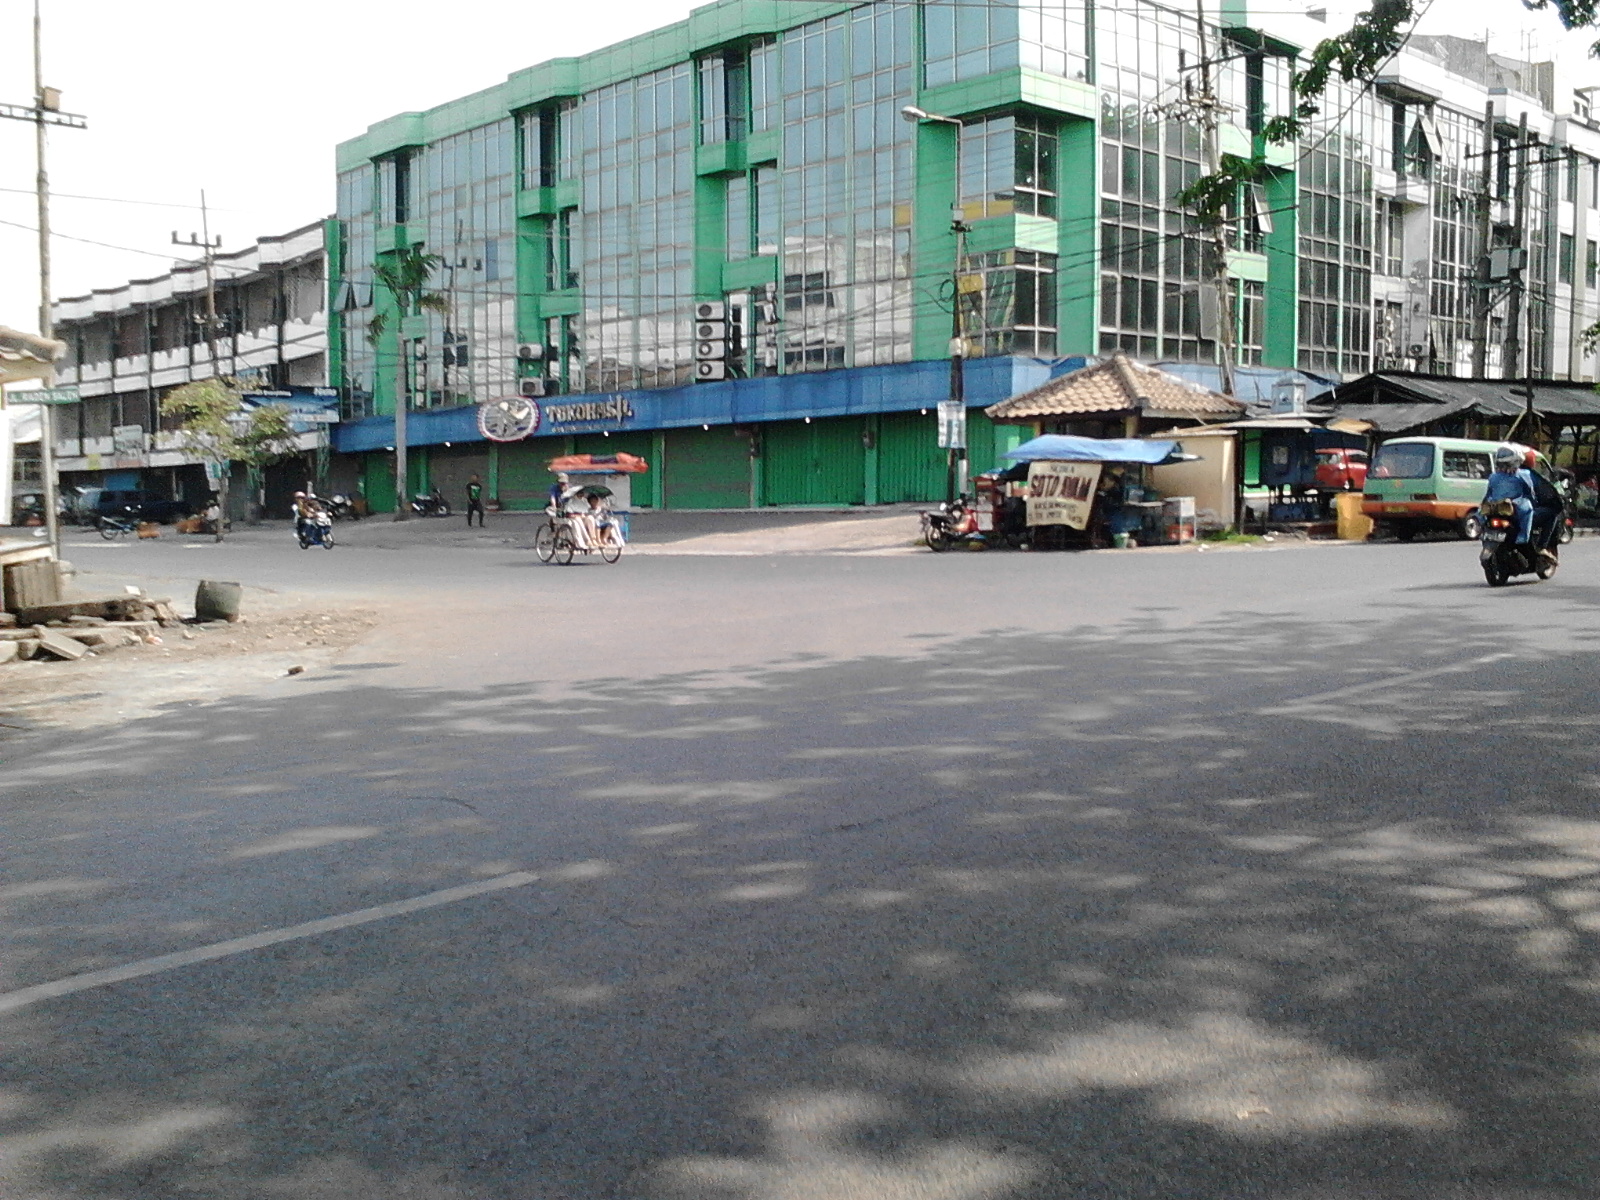 Perempatan depan stasiun sebelah kanan tempat bis dalam kota arah ke terminal Bungurasih biasanya lewat bukan bus P5 jam berangkat paling awal setengah